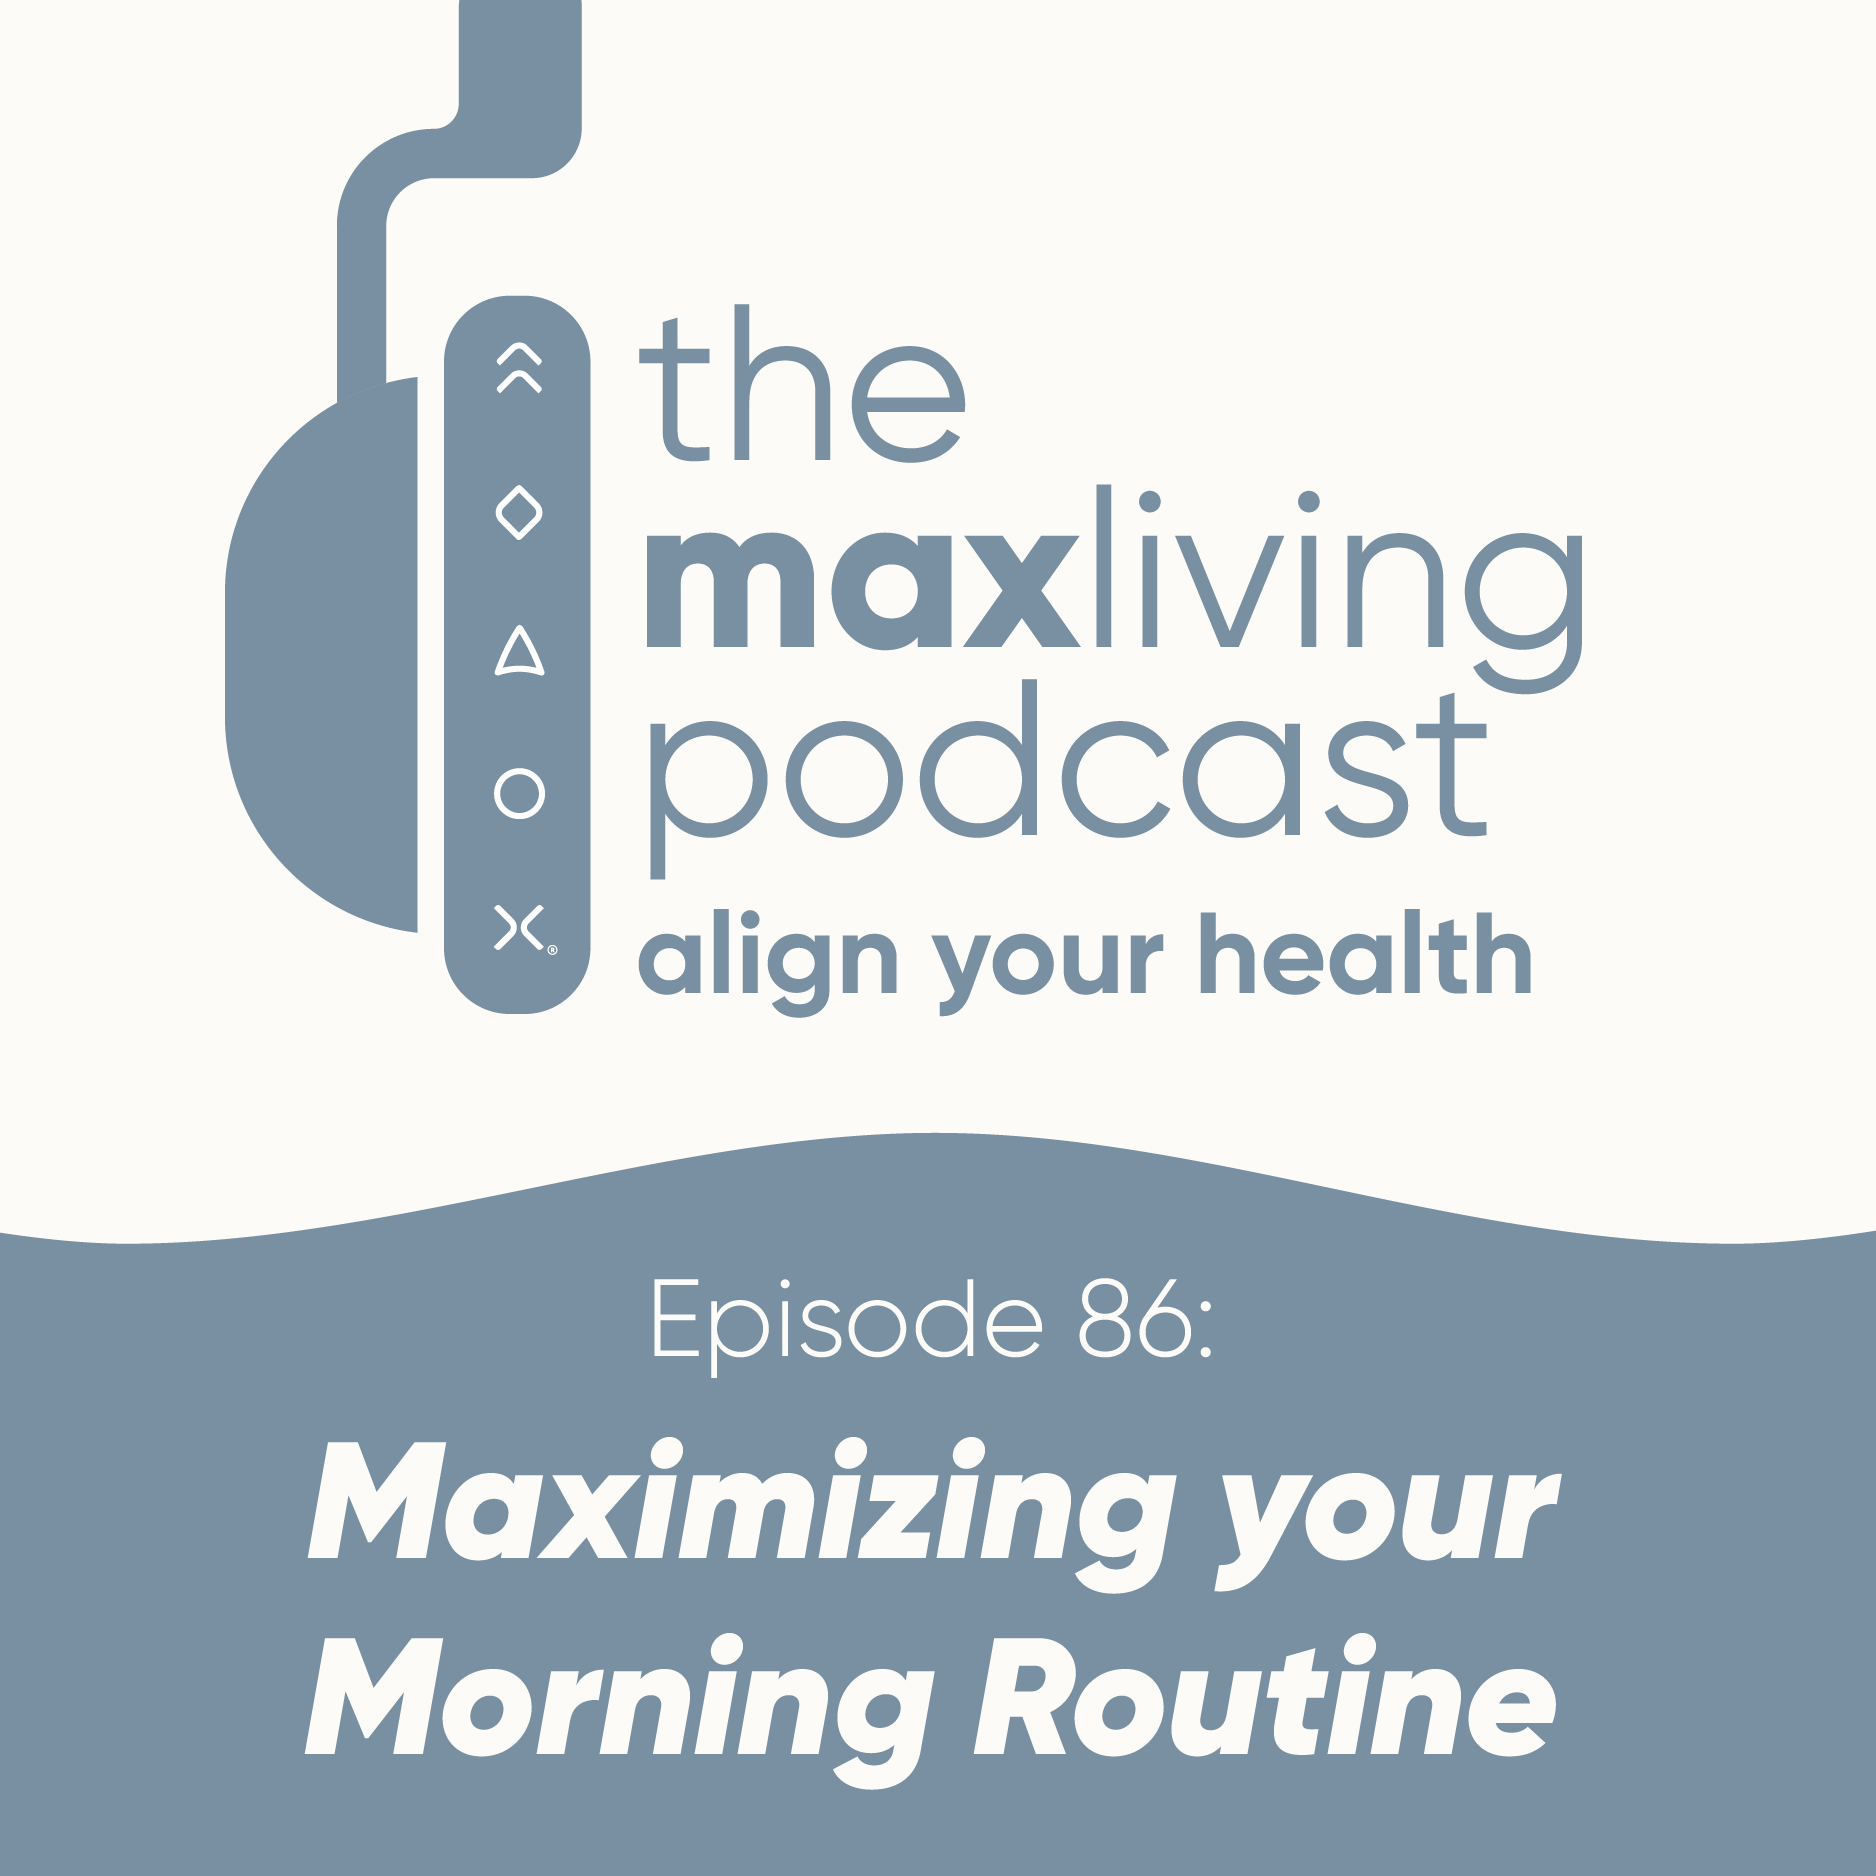 Maximizing your Morning Routine